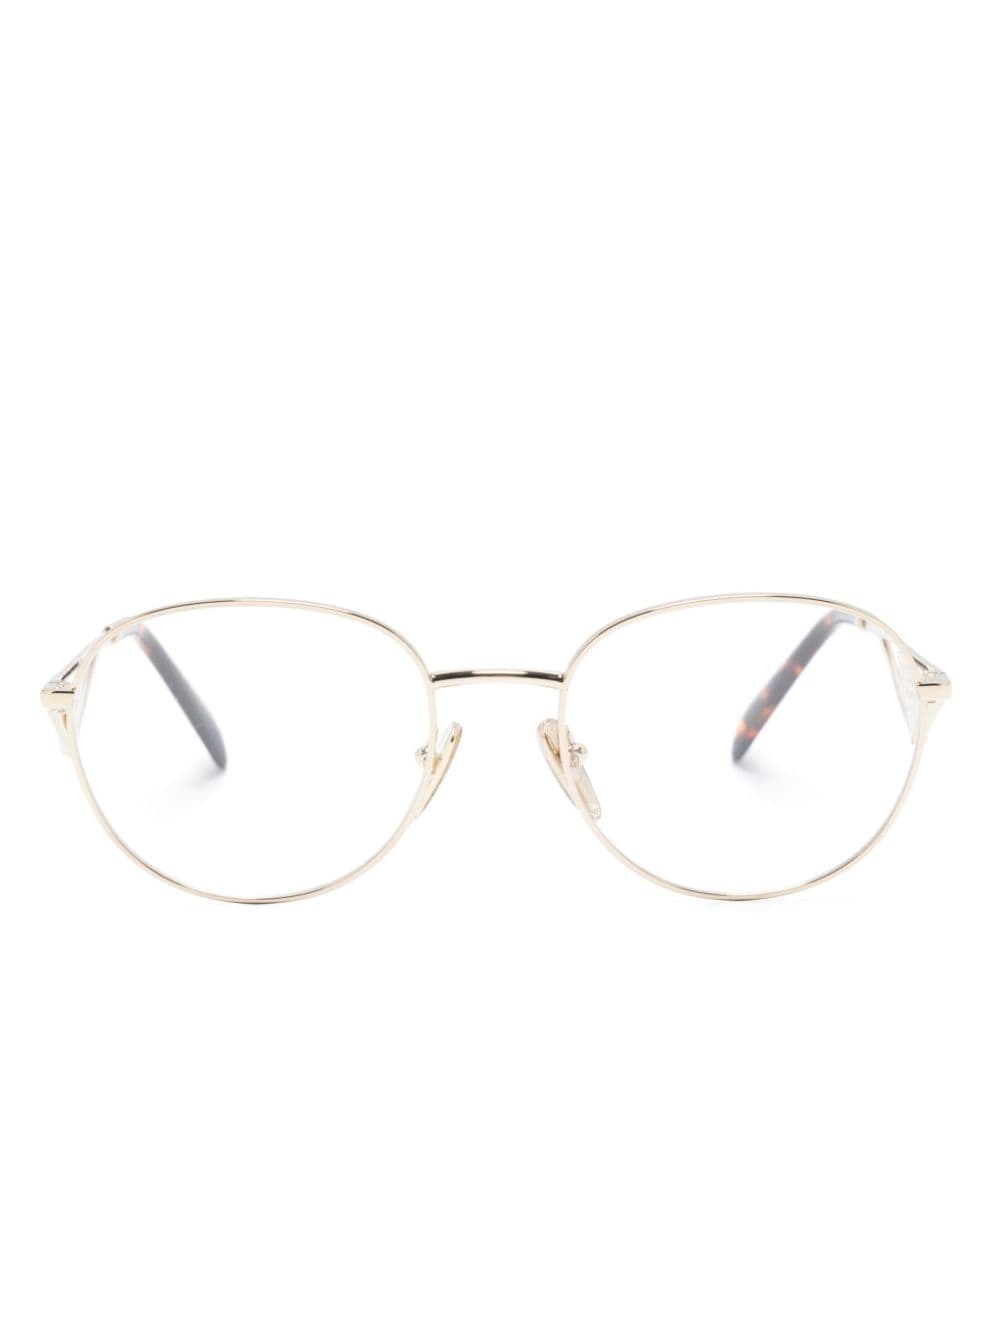 Prada Eyewear Brille mit rundem Gestell - Gold von Prada Eyewear